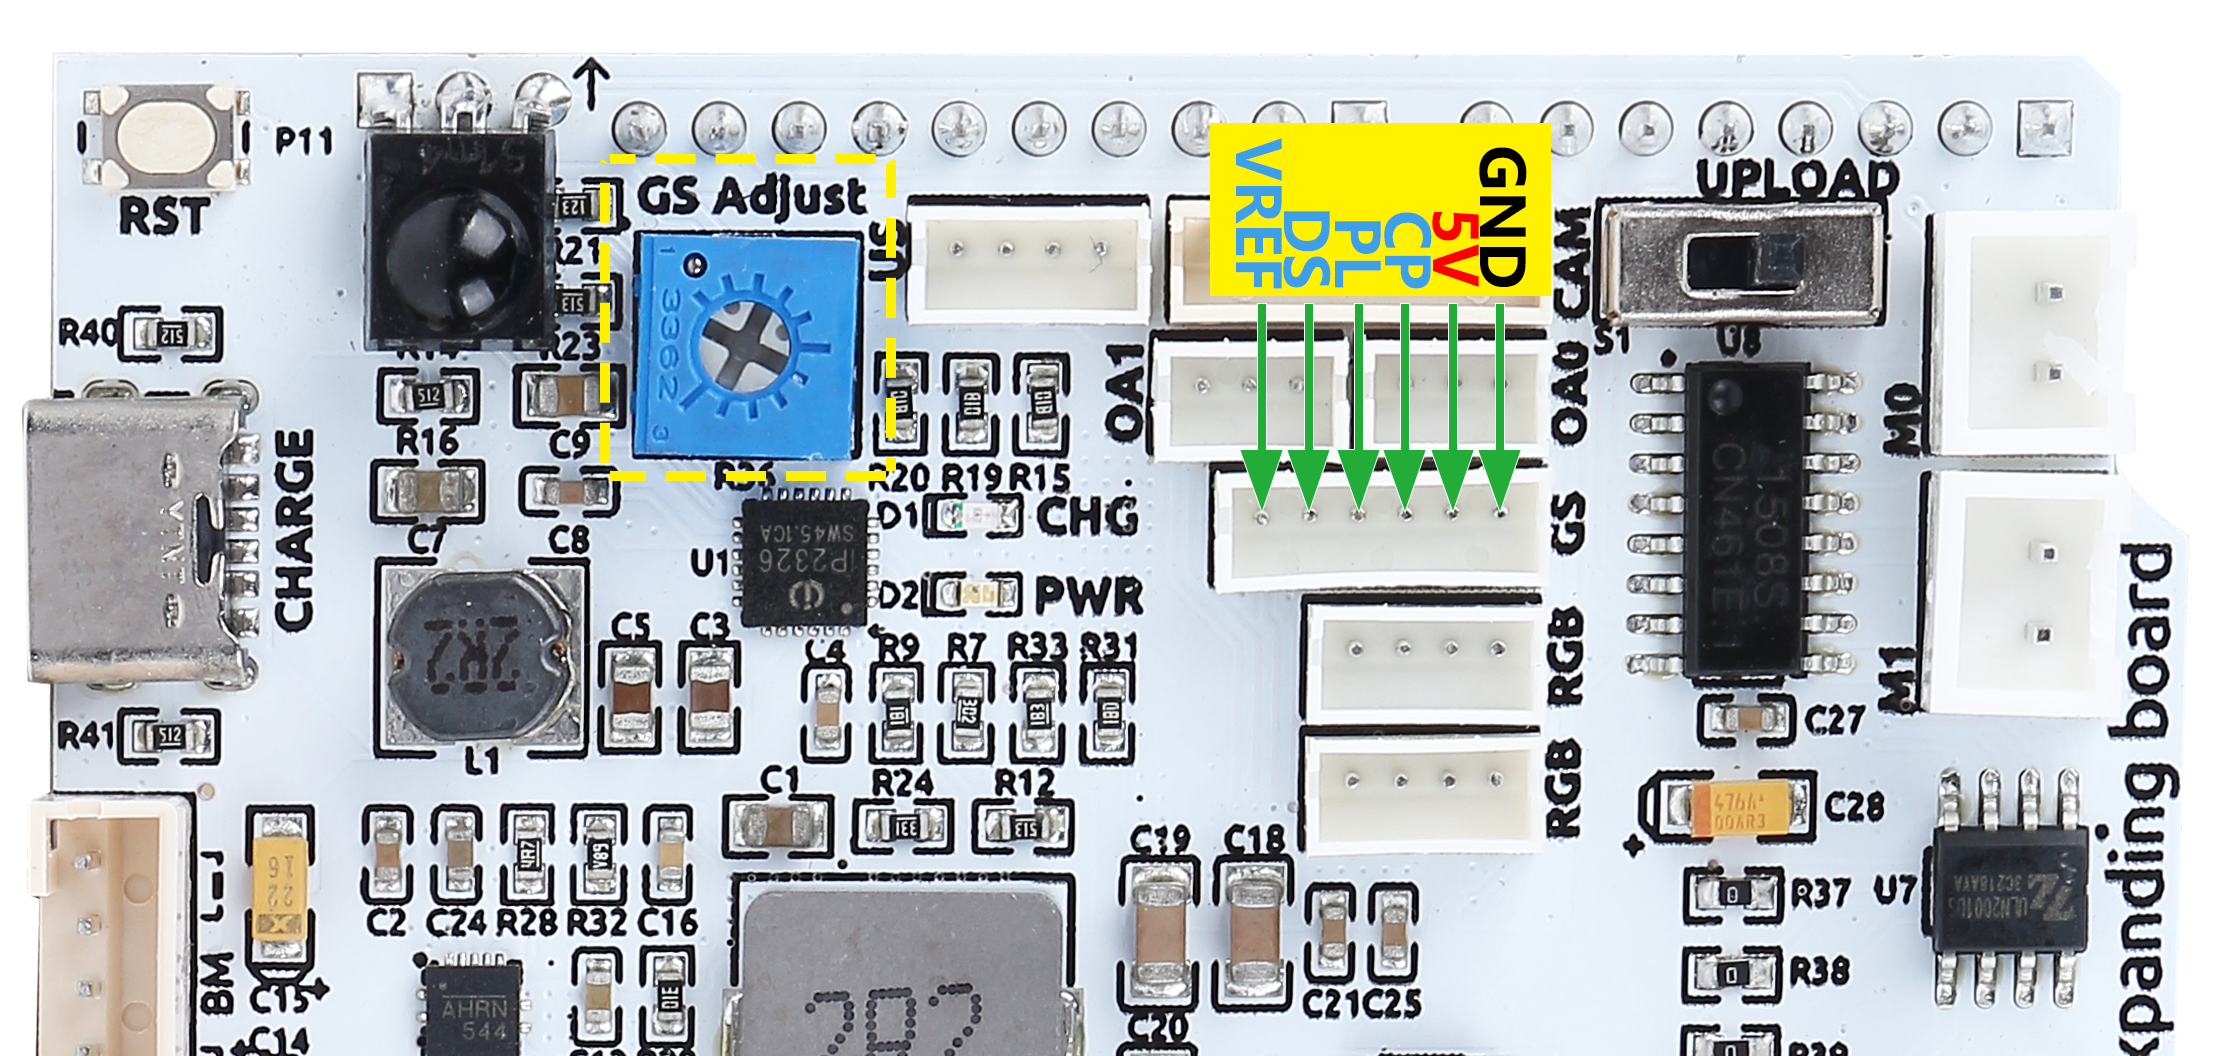 ESP32 CAM — SunFounder Zeus Robot Car Kit for Arduino 1.0 documentation